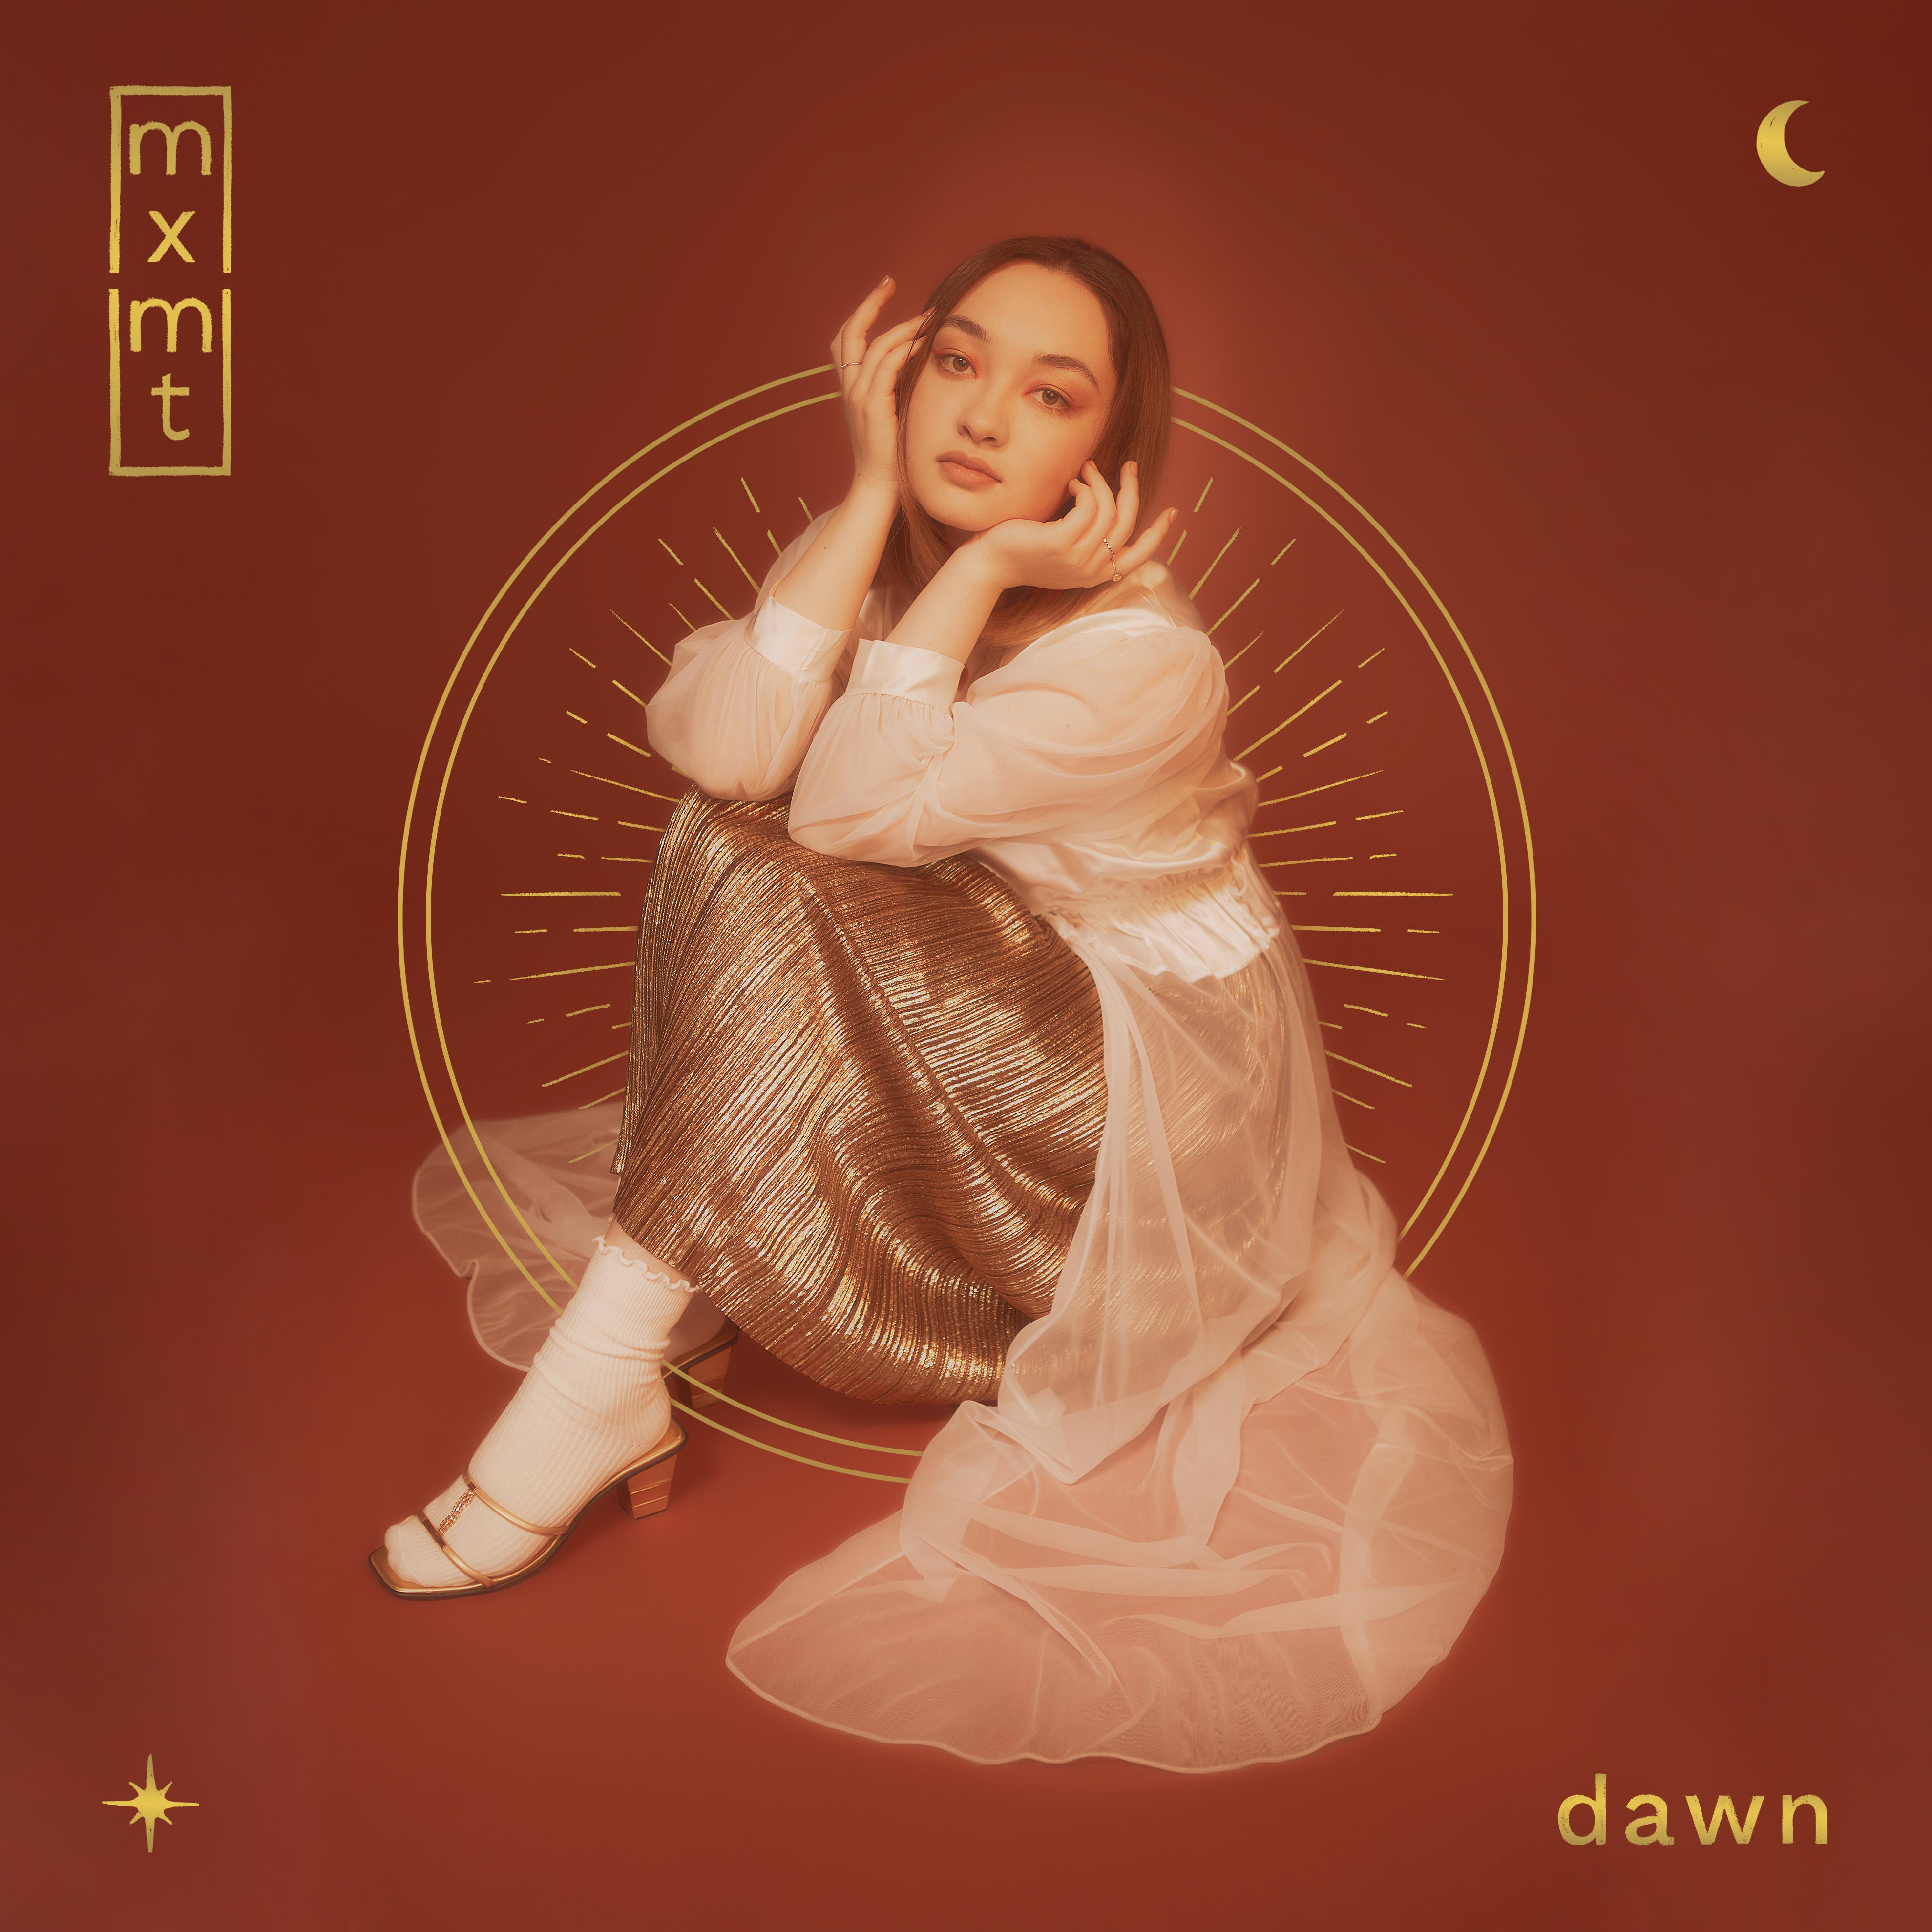 no faker歌词 歌手mxmtoon-专辑dawn-单曲《no faker》LRC歌词下载